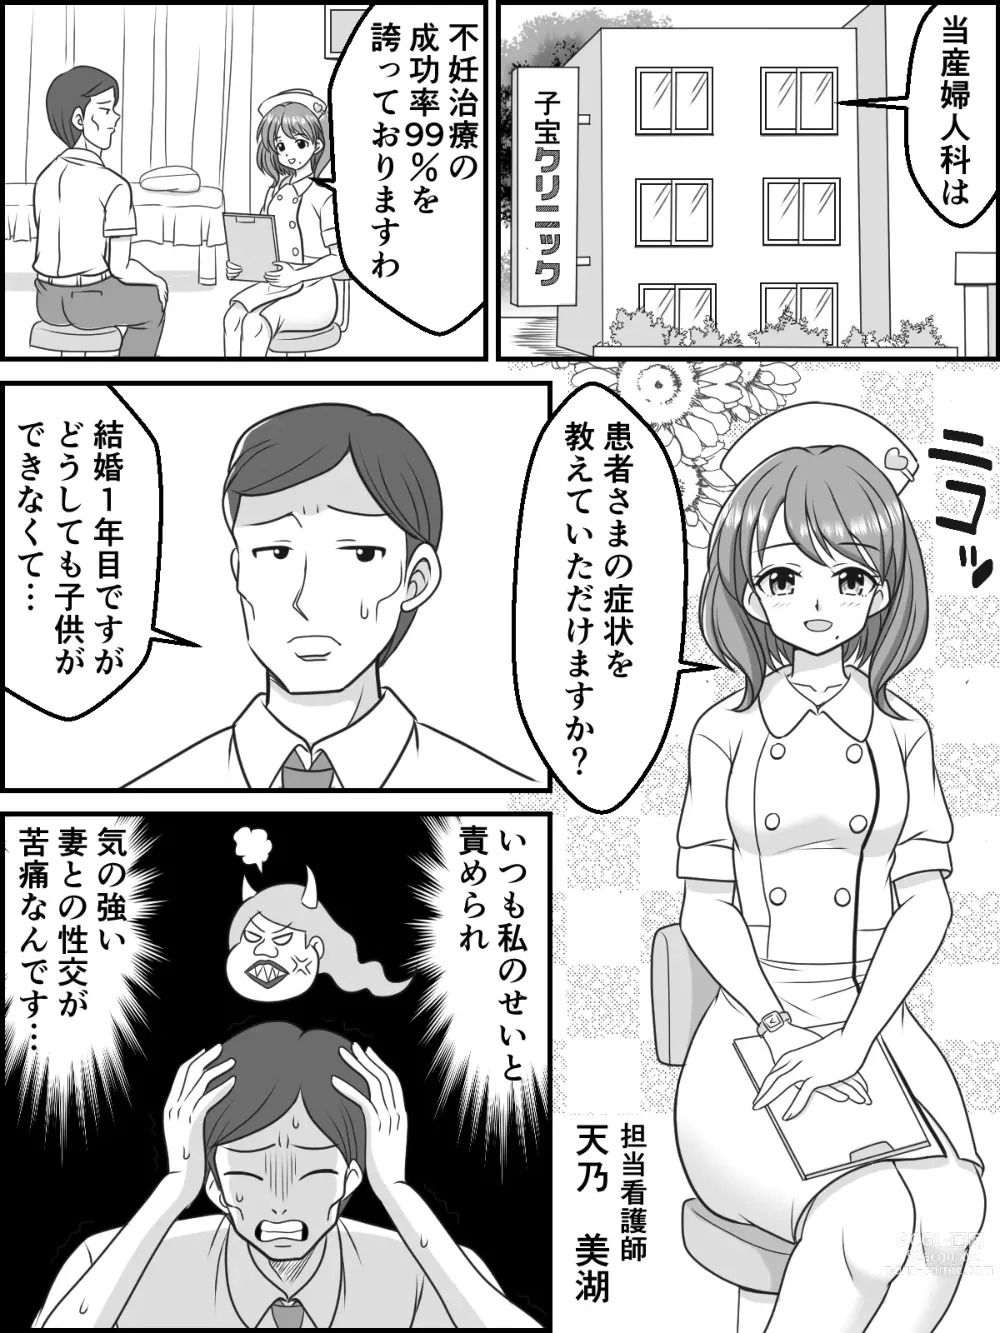 Page 2 of doujinshi Himitsu no Ninkatsu Clinic